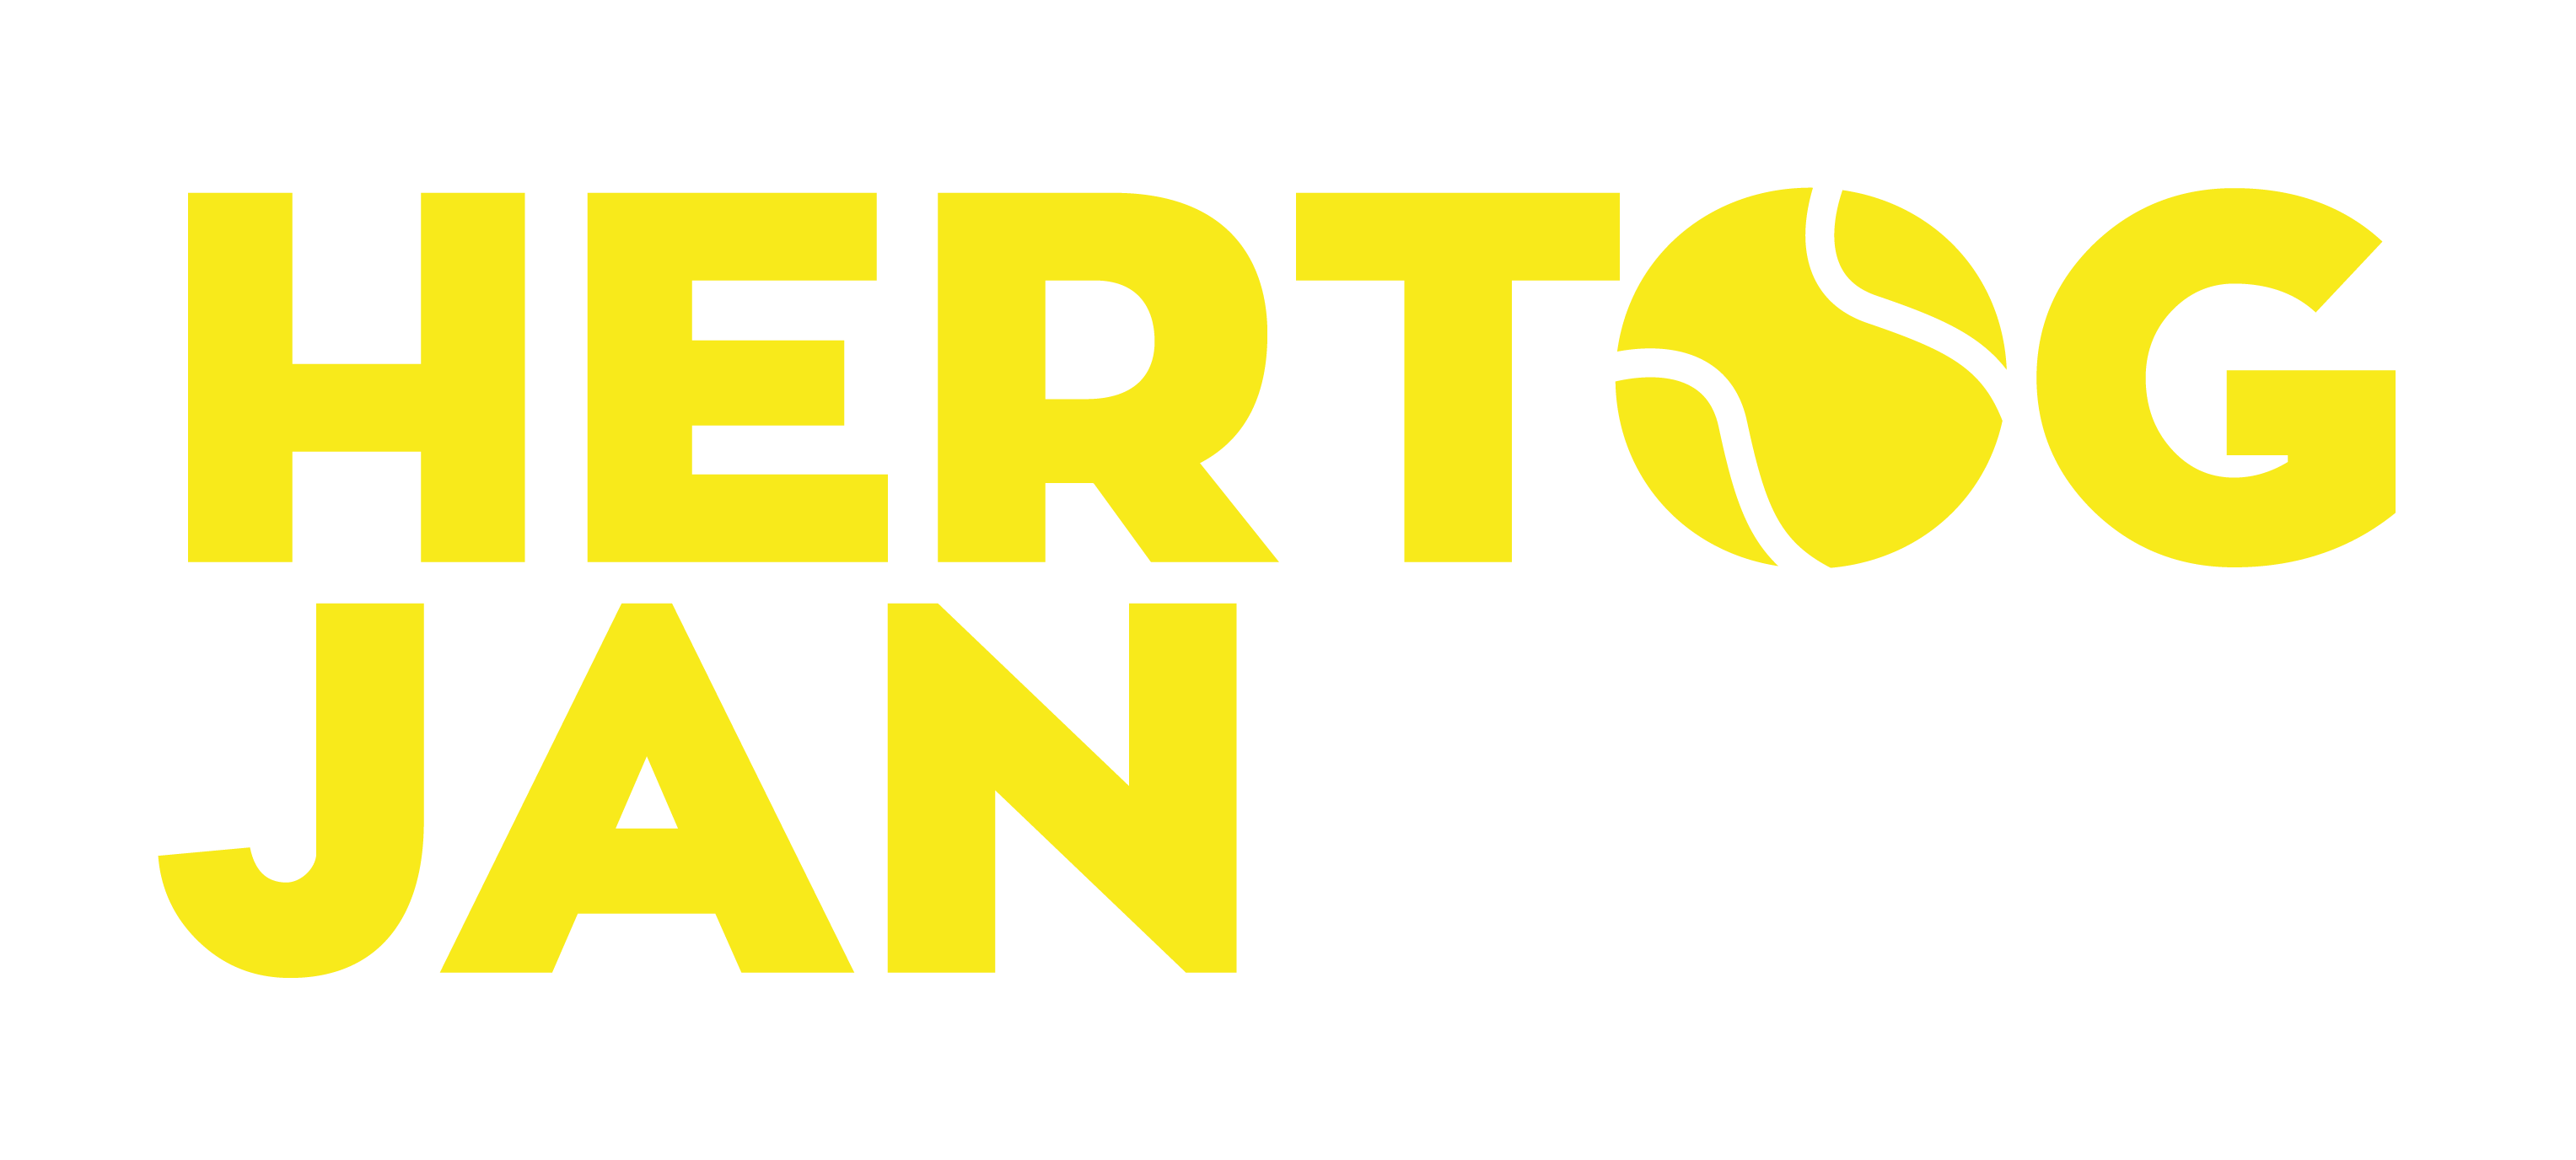 Logo TPV Hertog Jan